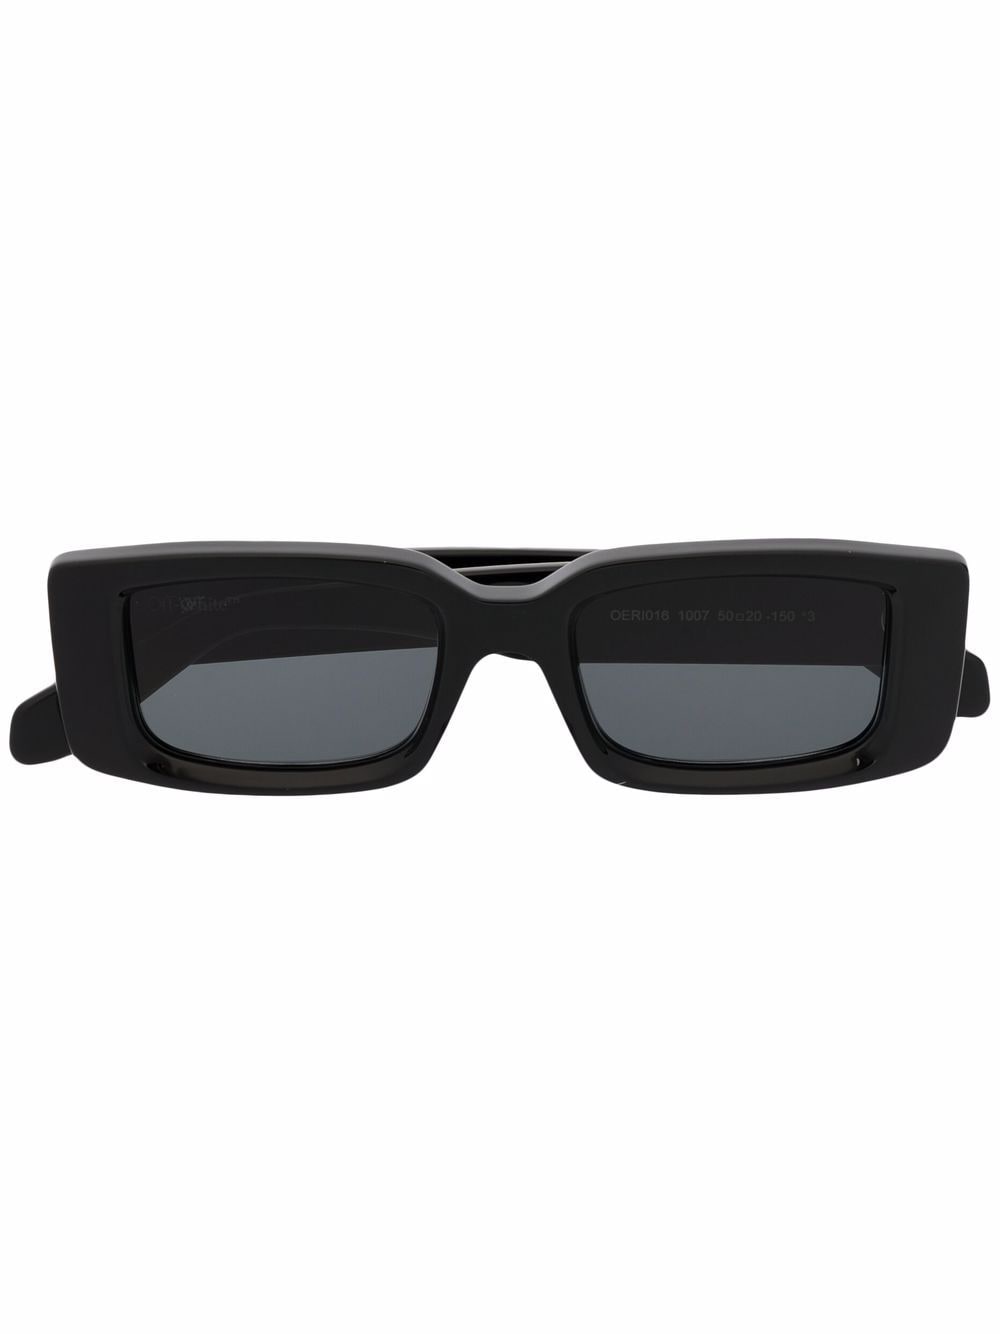 Off-White Sunglasses for Men — FARFETCH